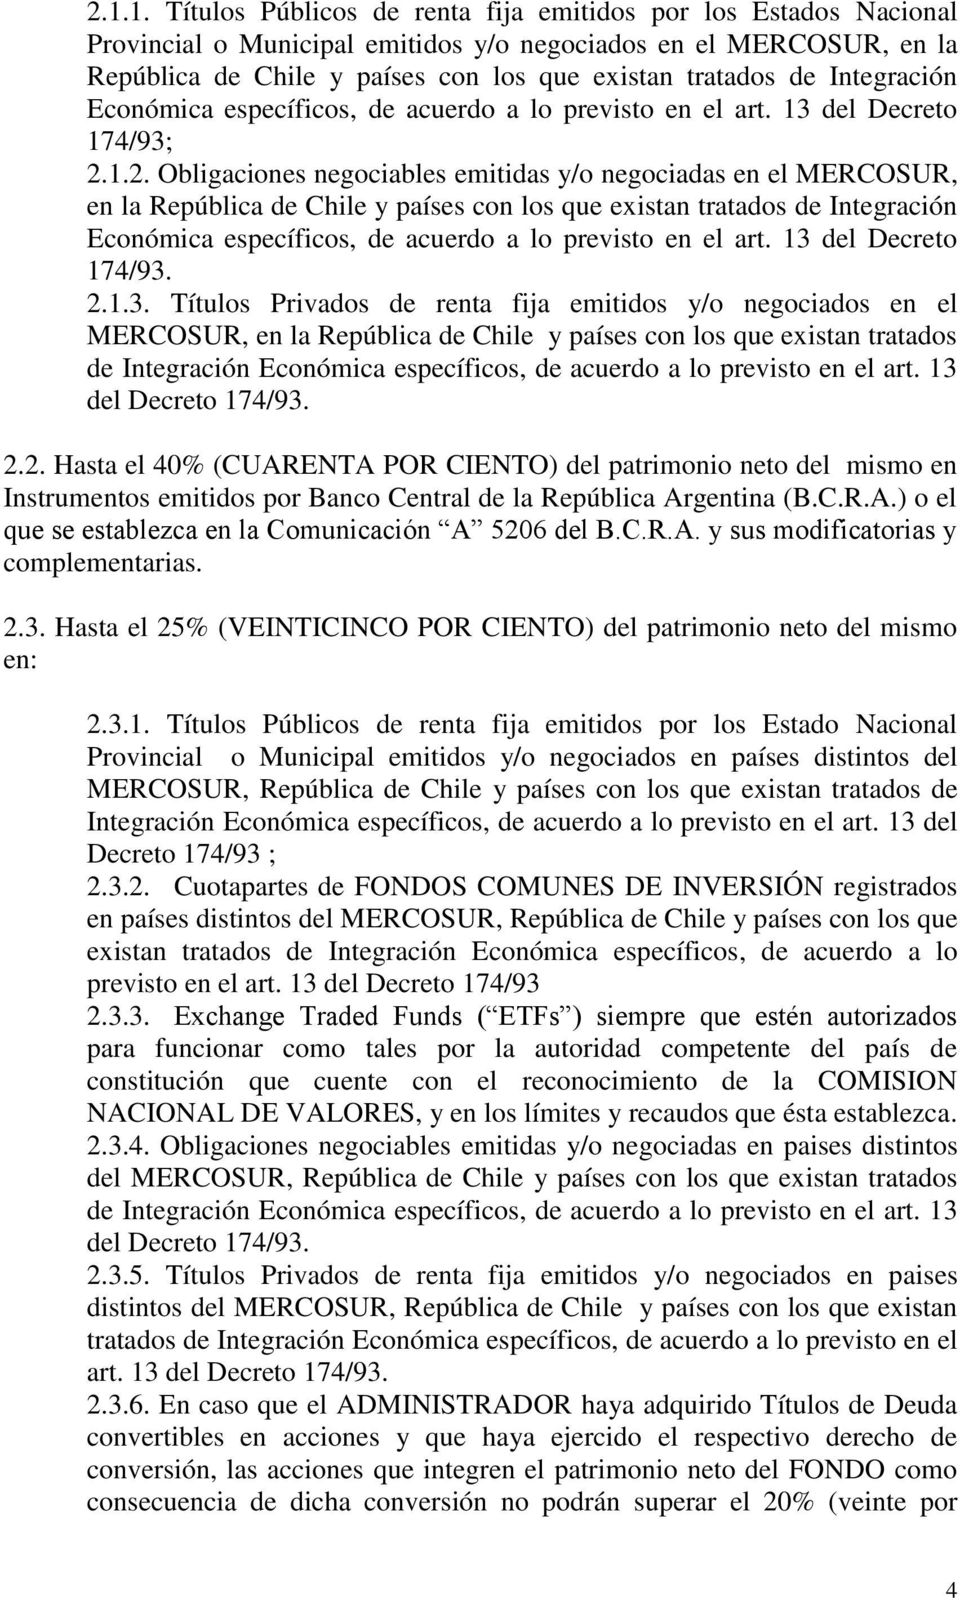 1.2. Obligaciones negociables emitidas y/o negociadas en el MERCOSUR, en la República de Chile y países con los que existan tratados de Integración Económica específicos, de acuerdo a lo previsto en